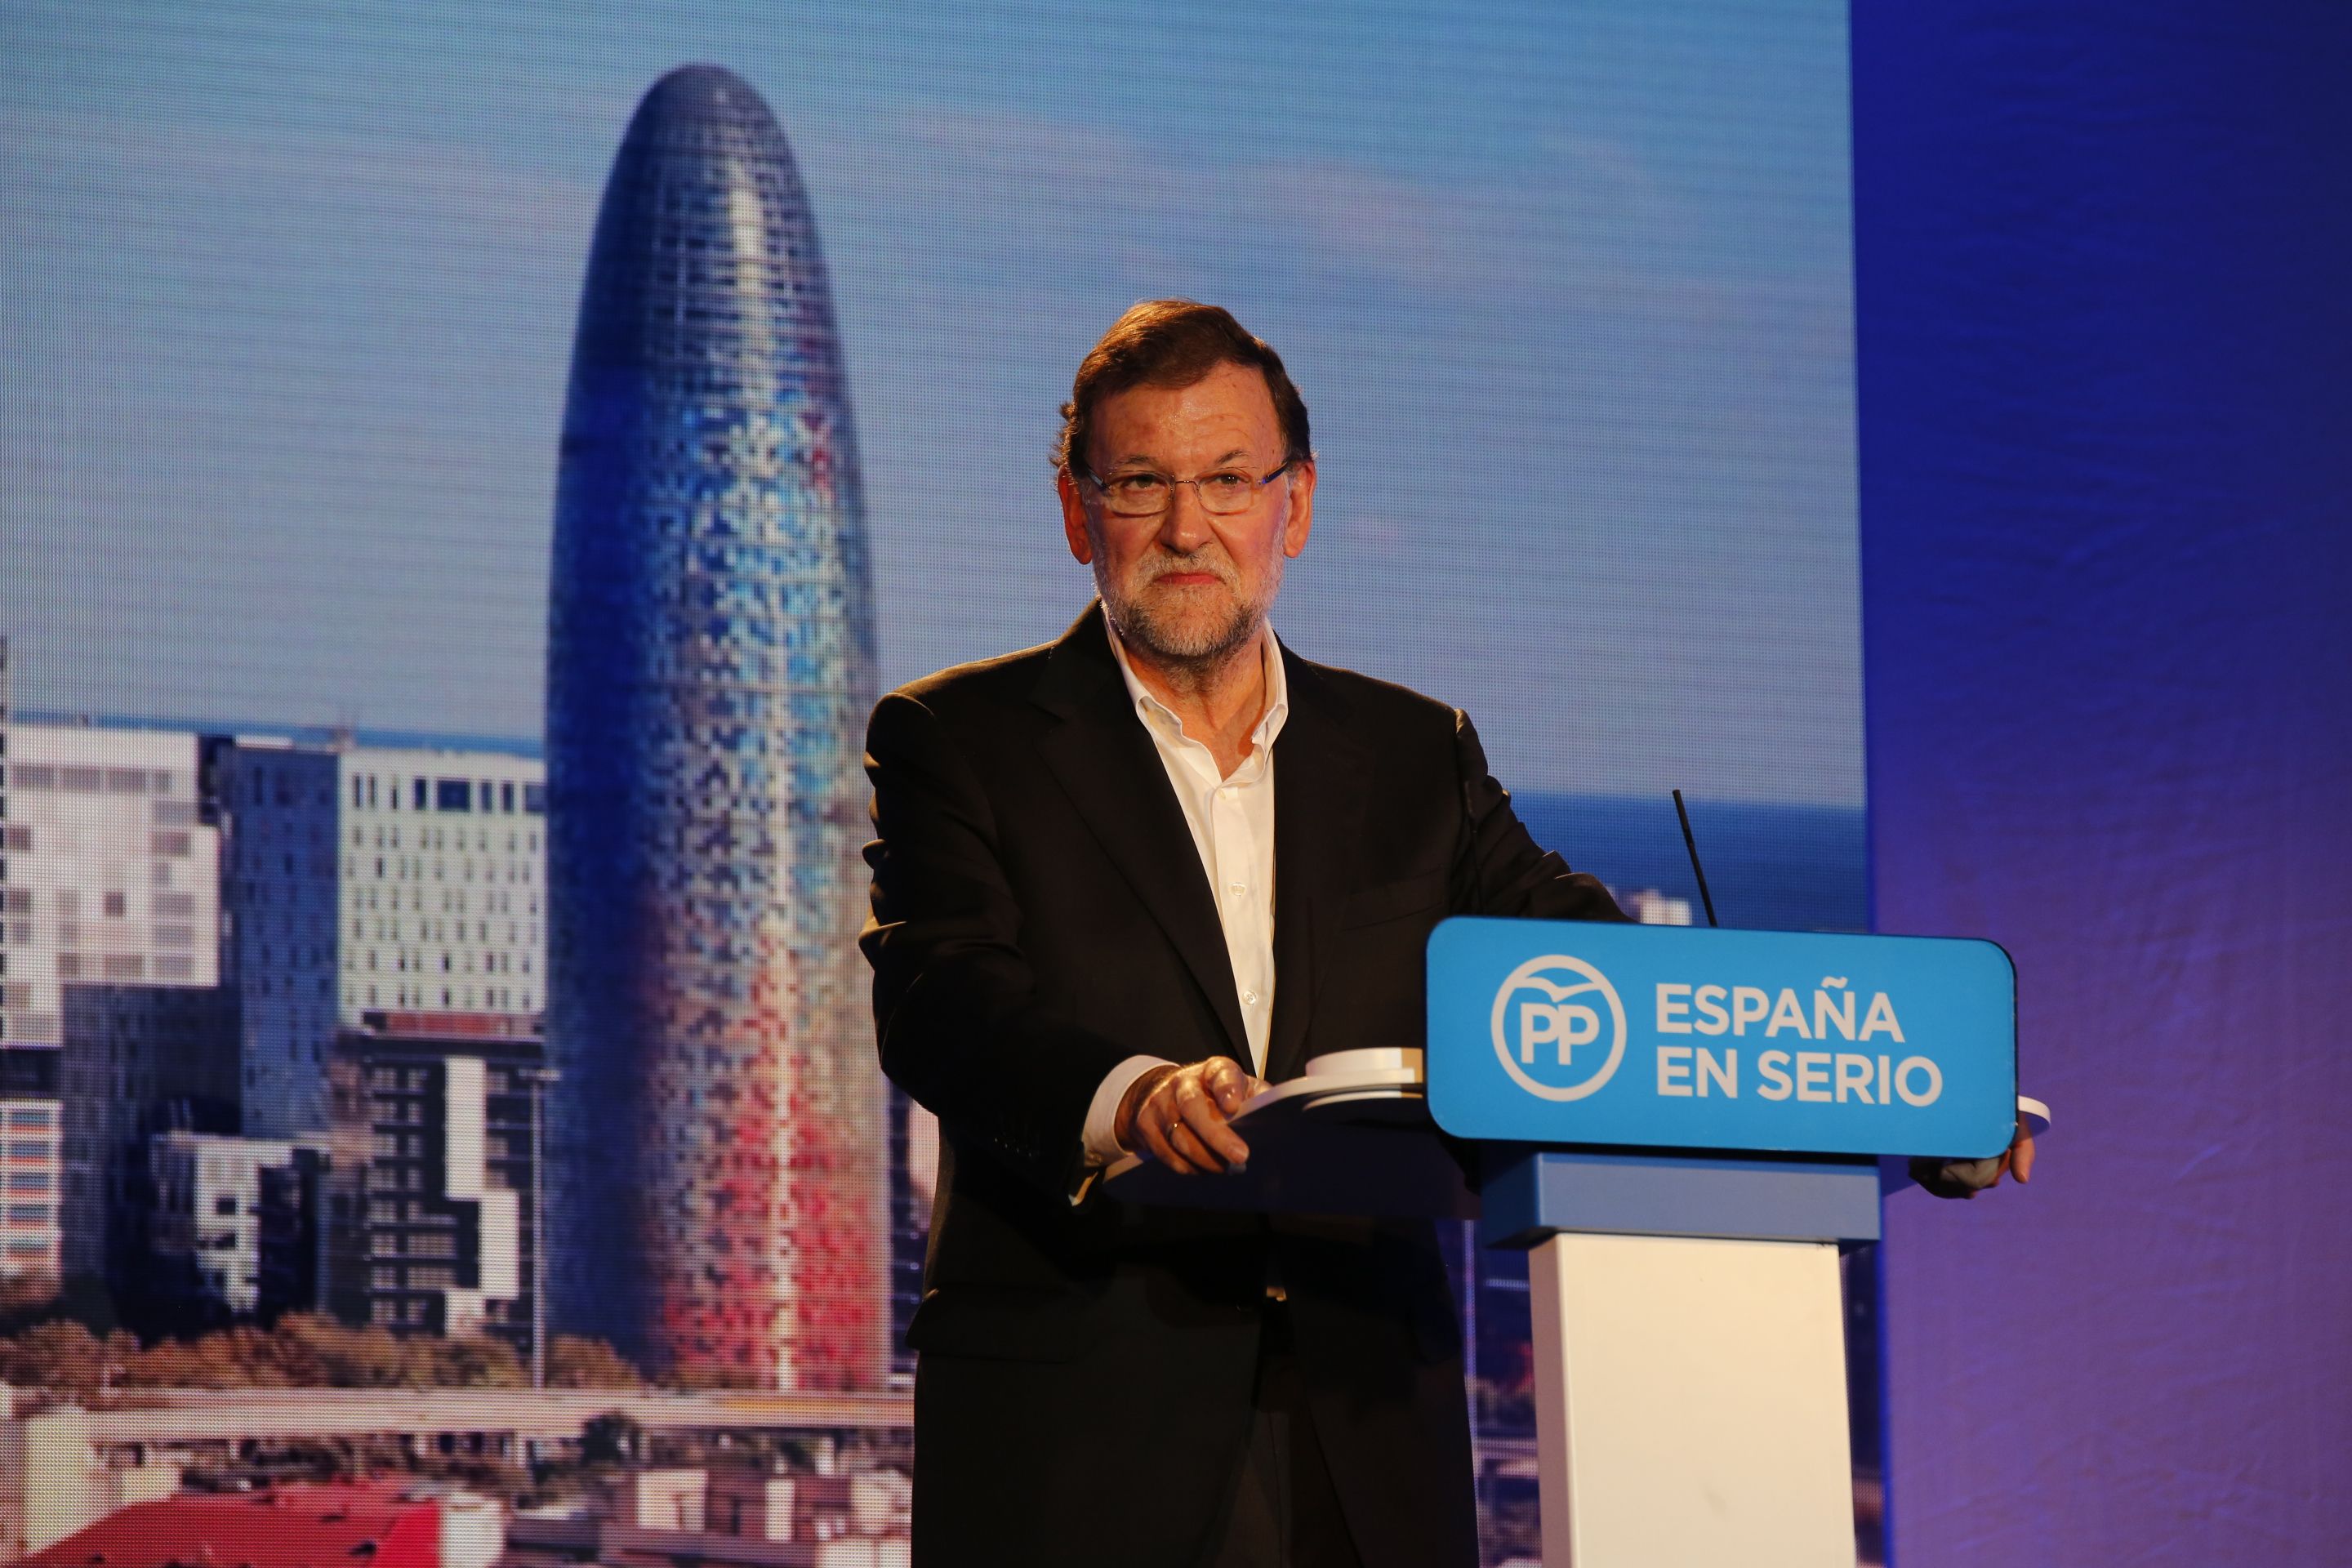 Rajoy torna a Barcelona per reforçar el discurs espanyolista